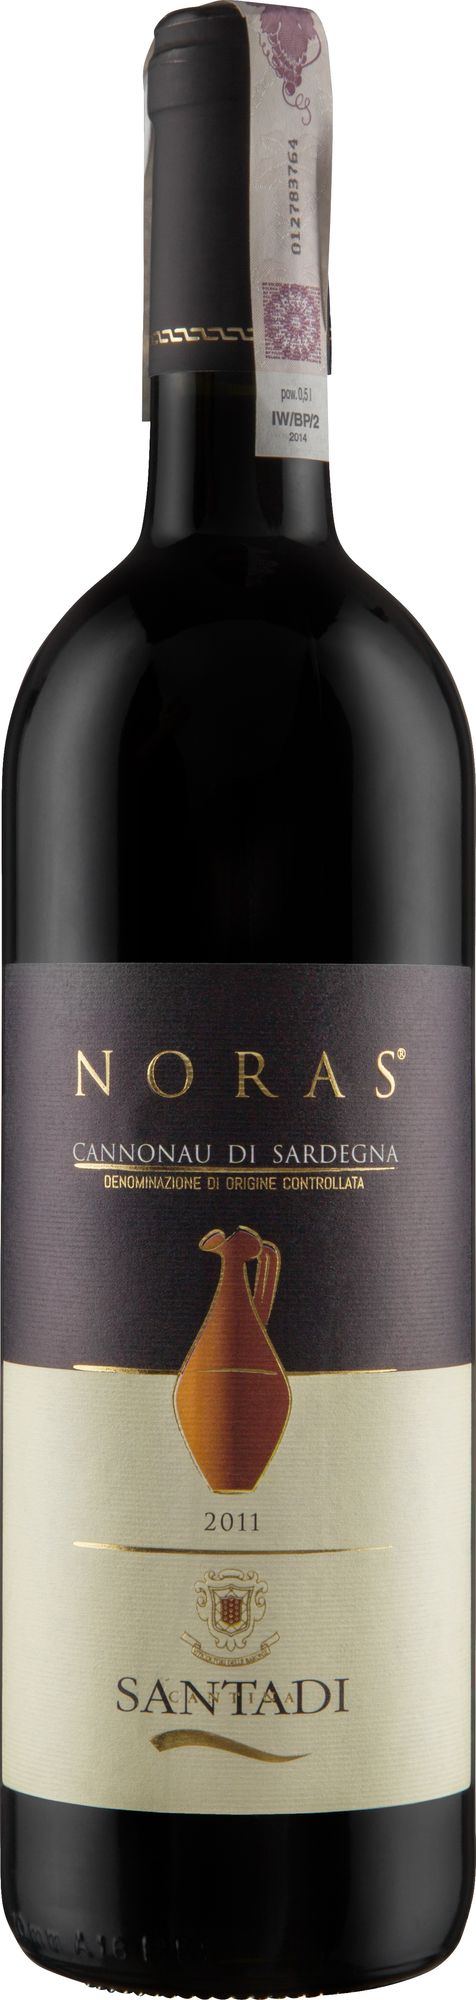 Wino Santadi Noras Cannonau di Sardegna DOC